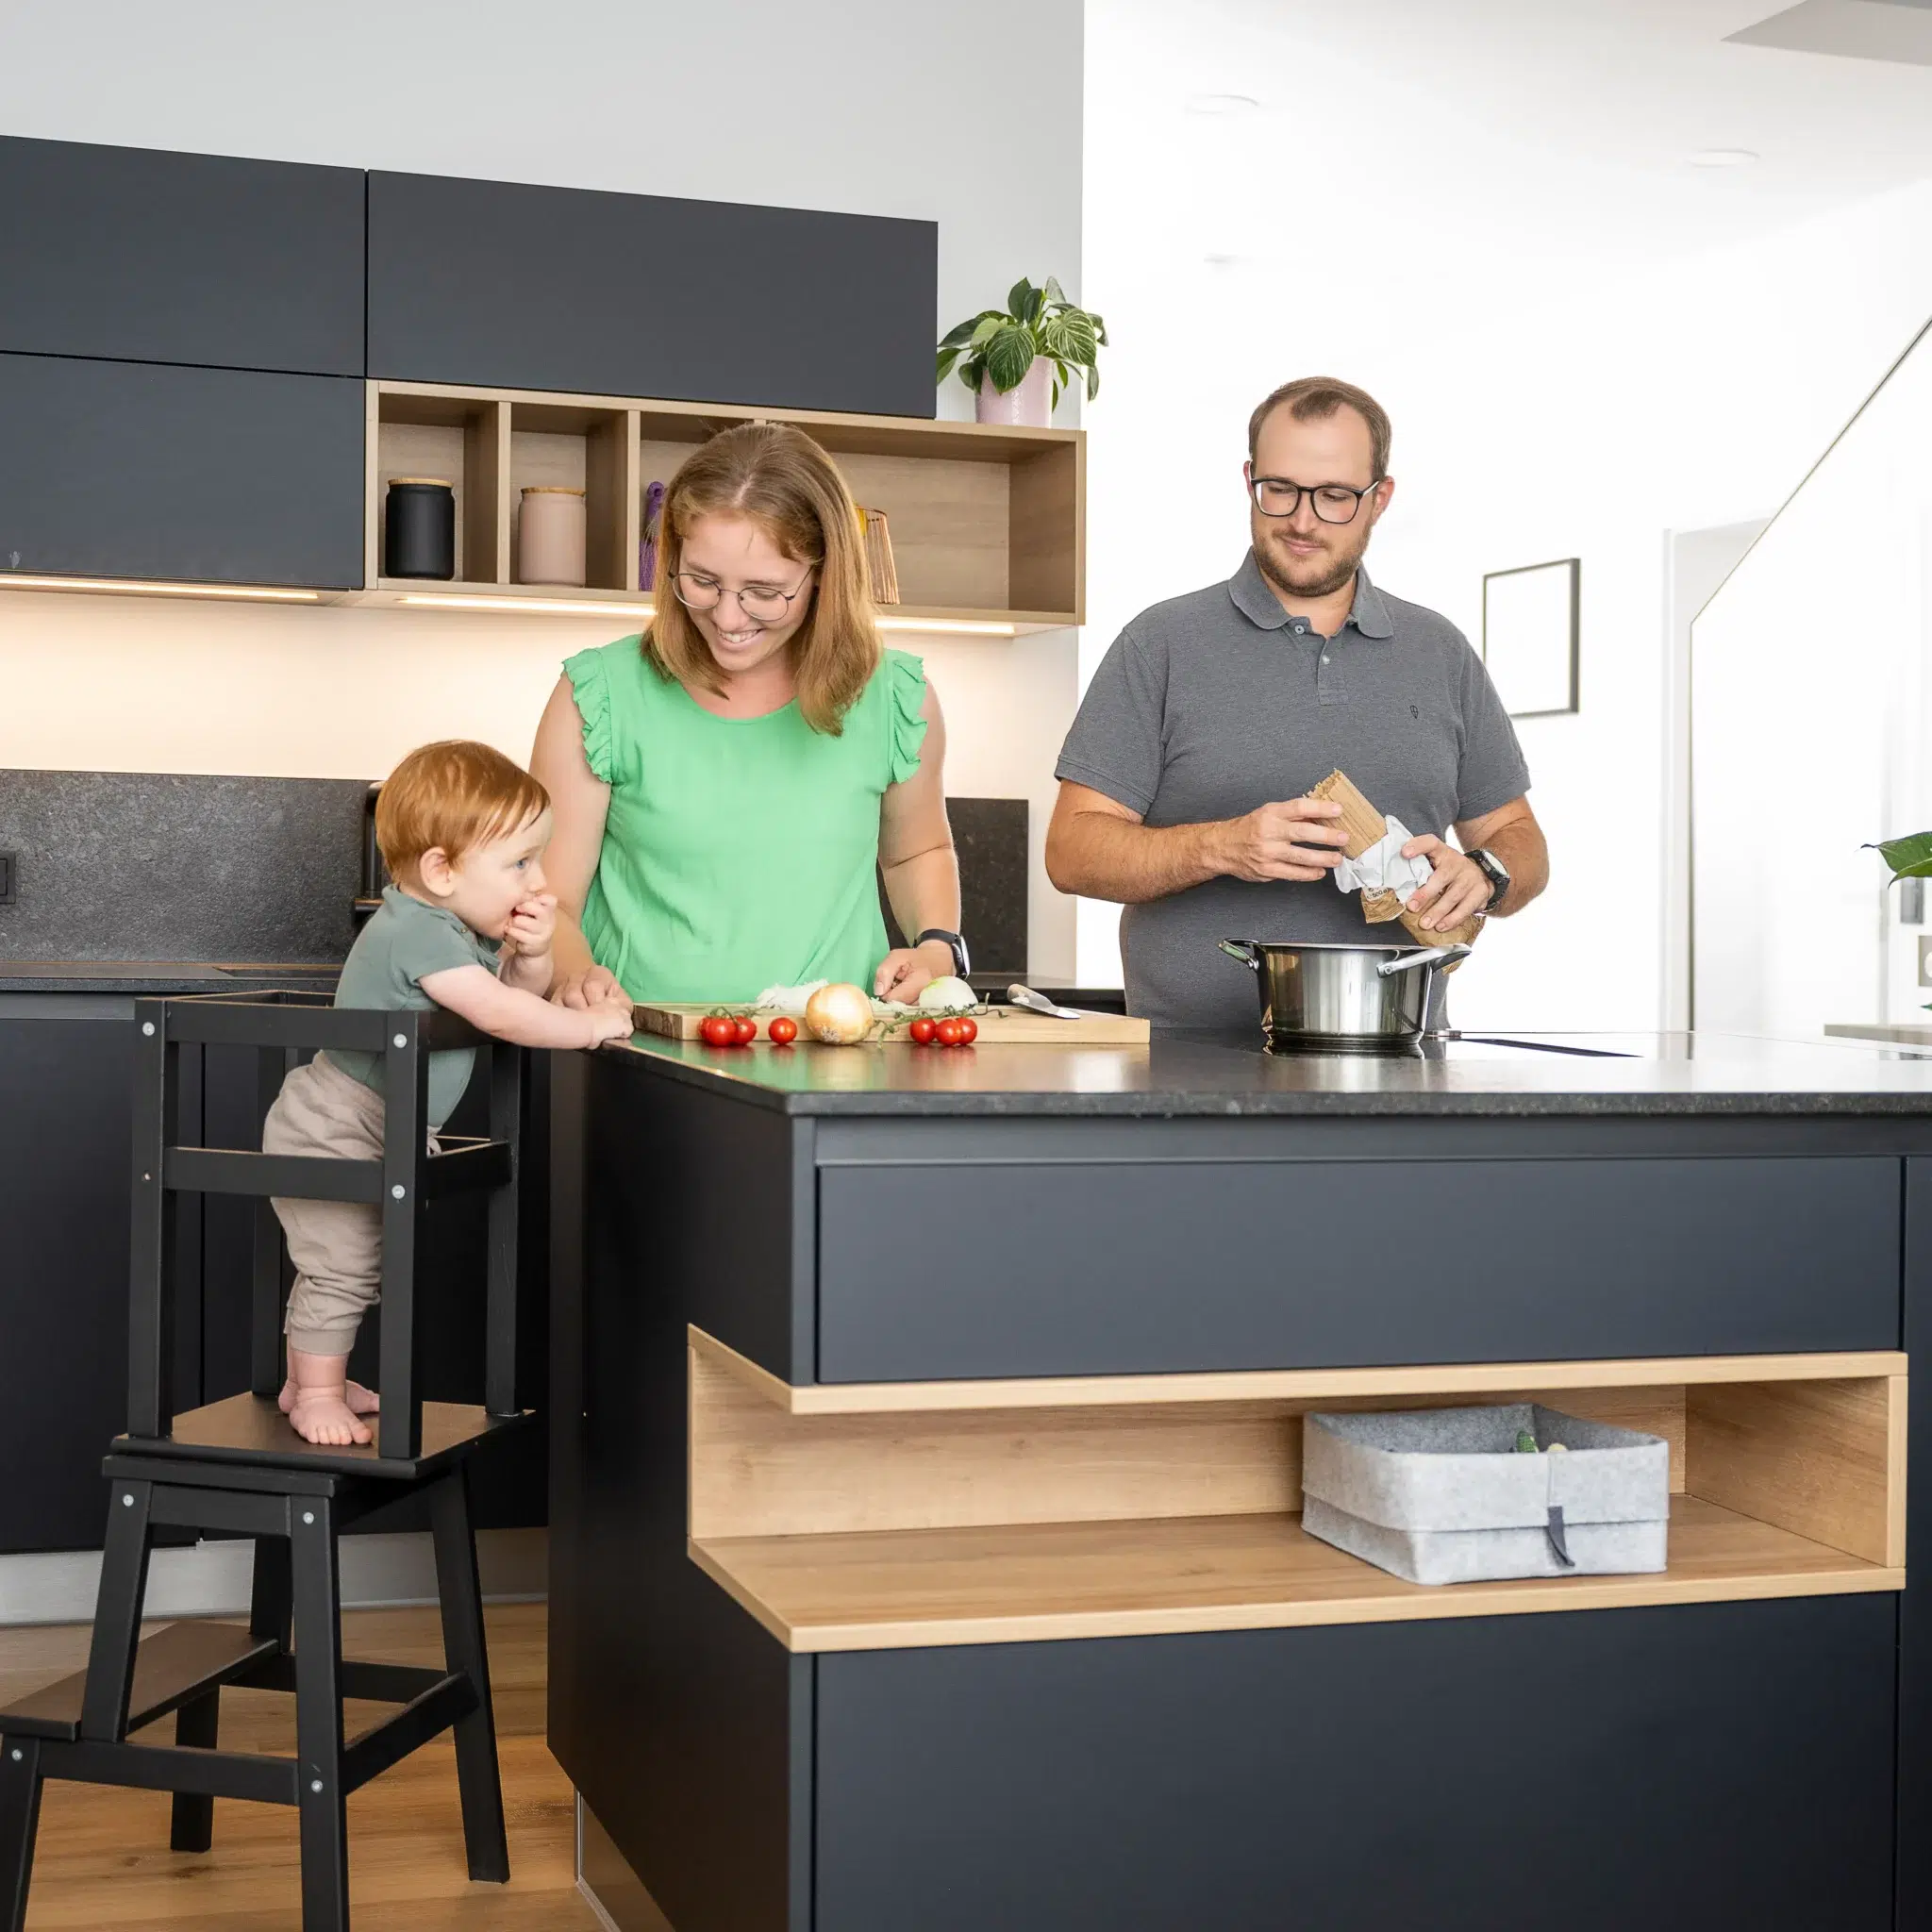 Homestory Referenzküche in schwarz mit Familie am kochen